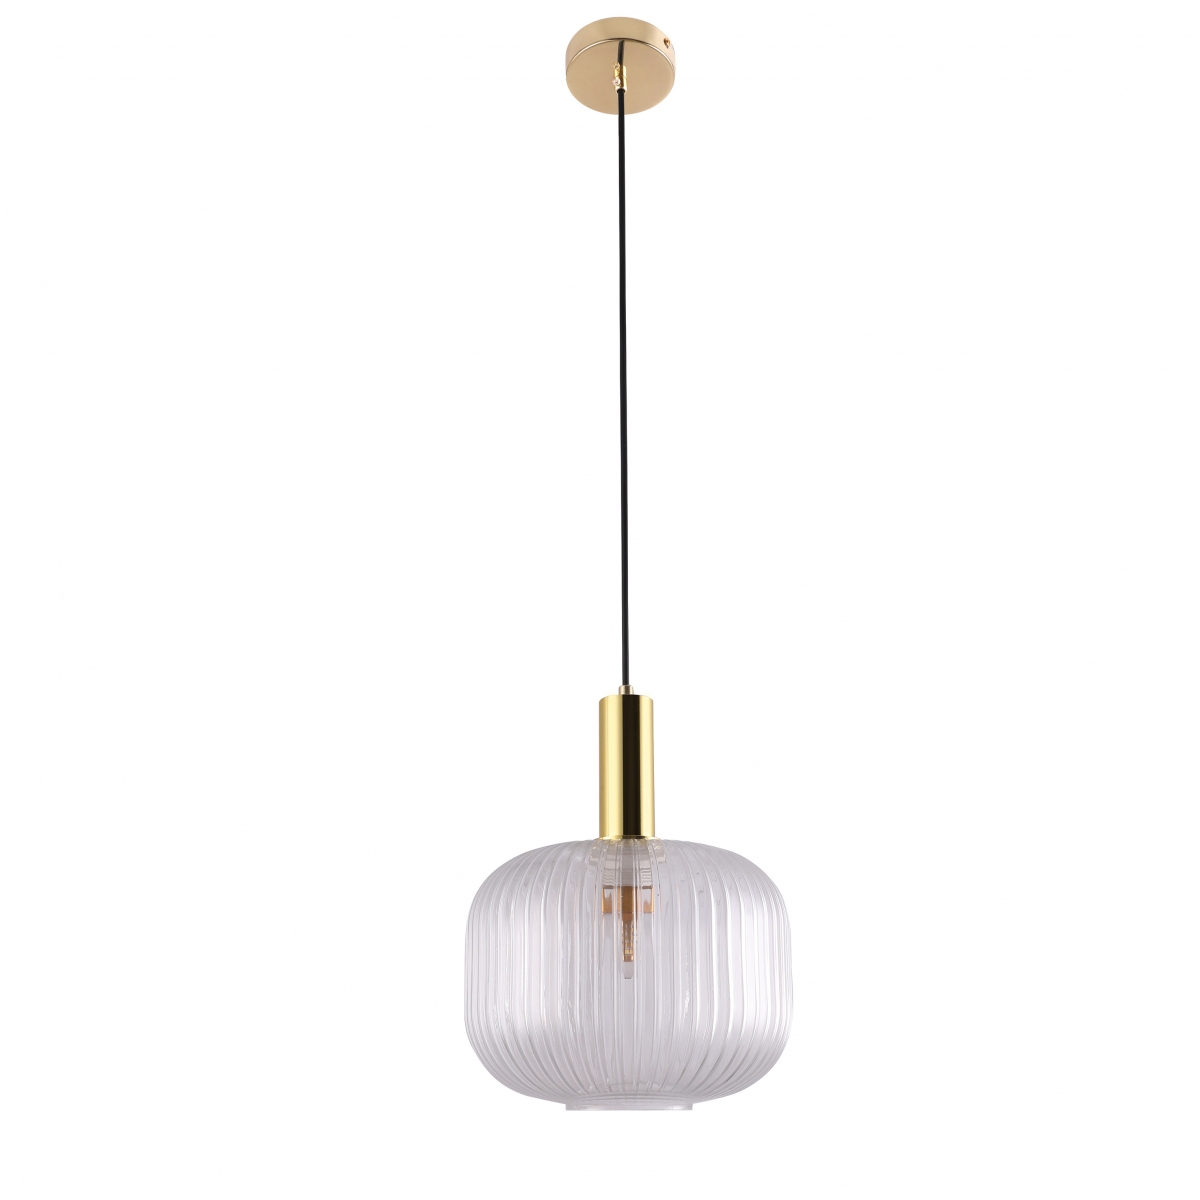 Nowoczesny design lampy wiszącej FRANCESCO, przeźroczysty klosz